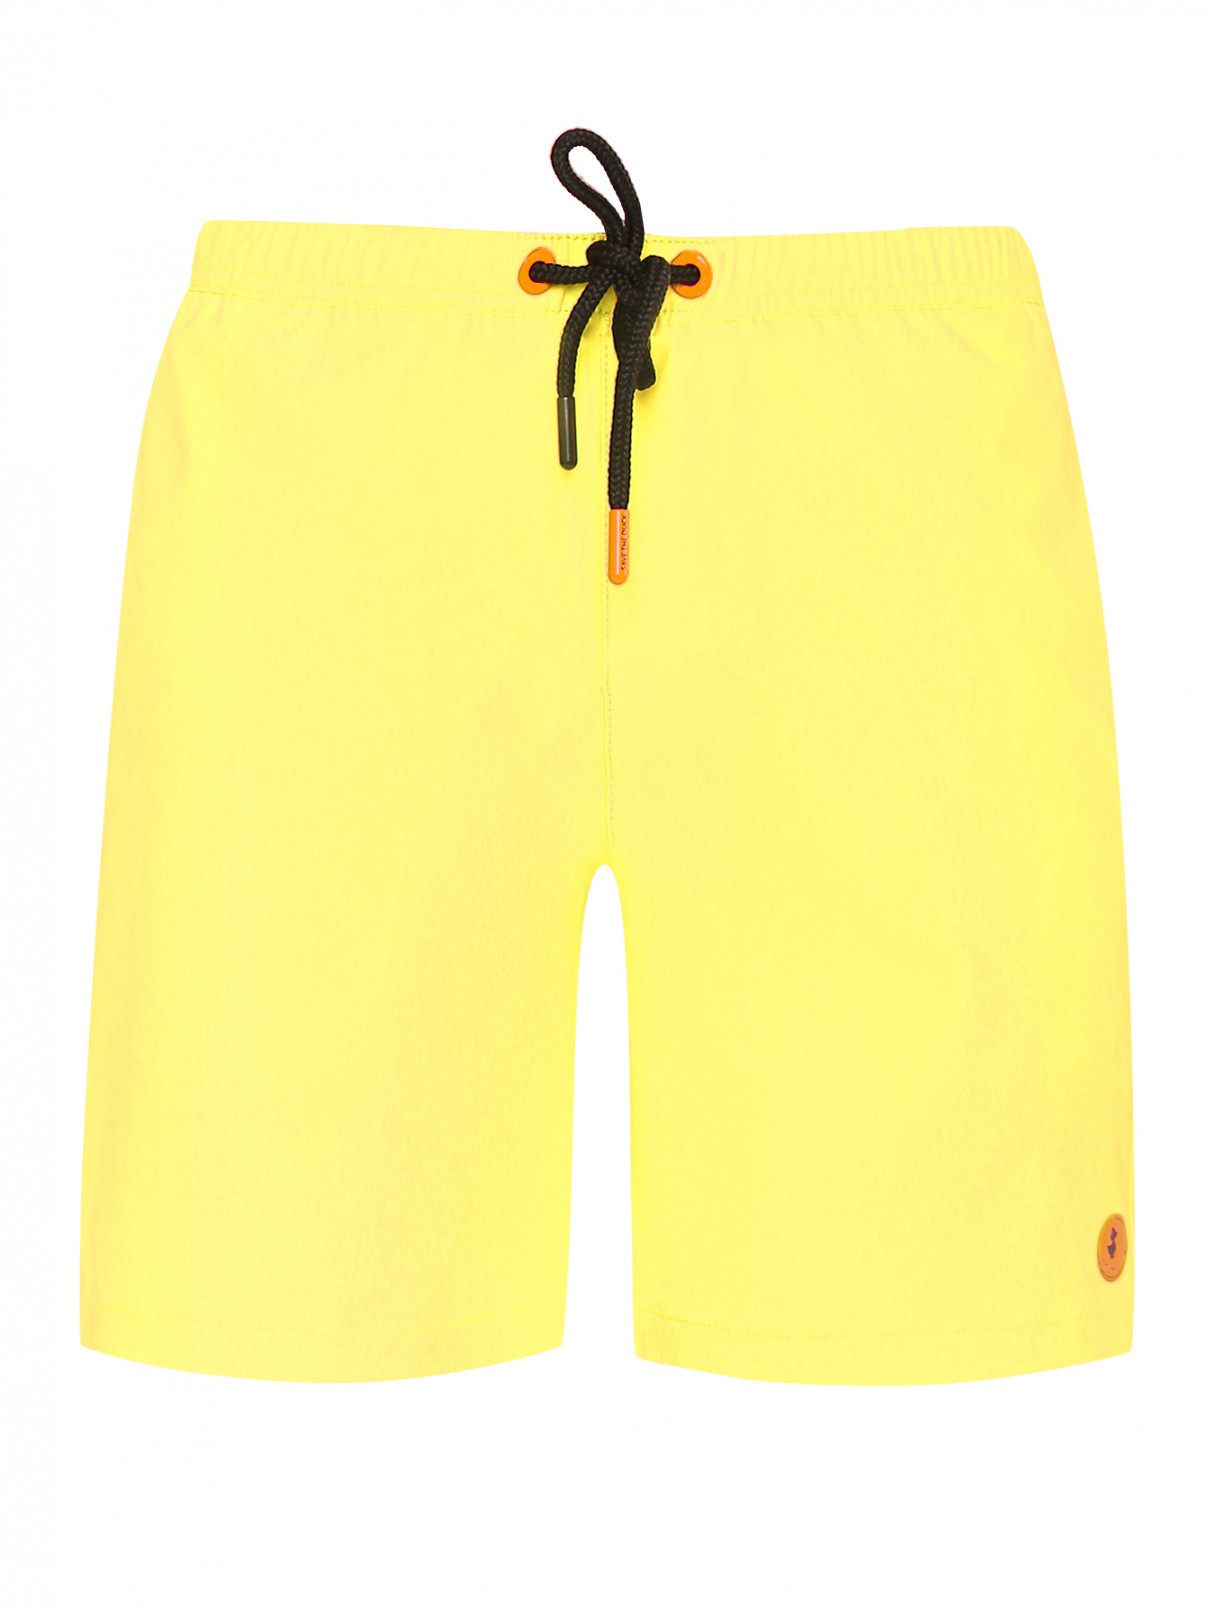 Однотонные шорты с карманами Save the Duck  –  Общий вид  – Цвет:  Желтый